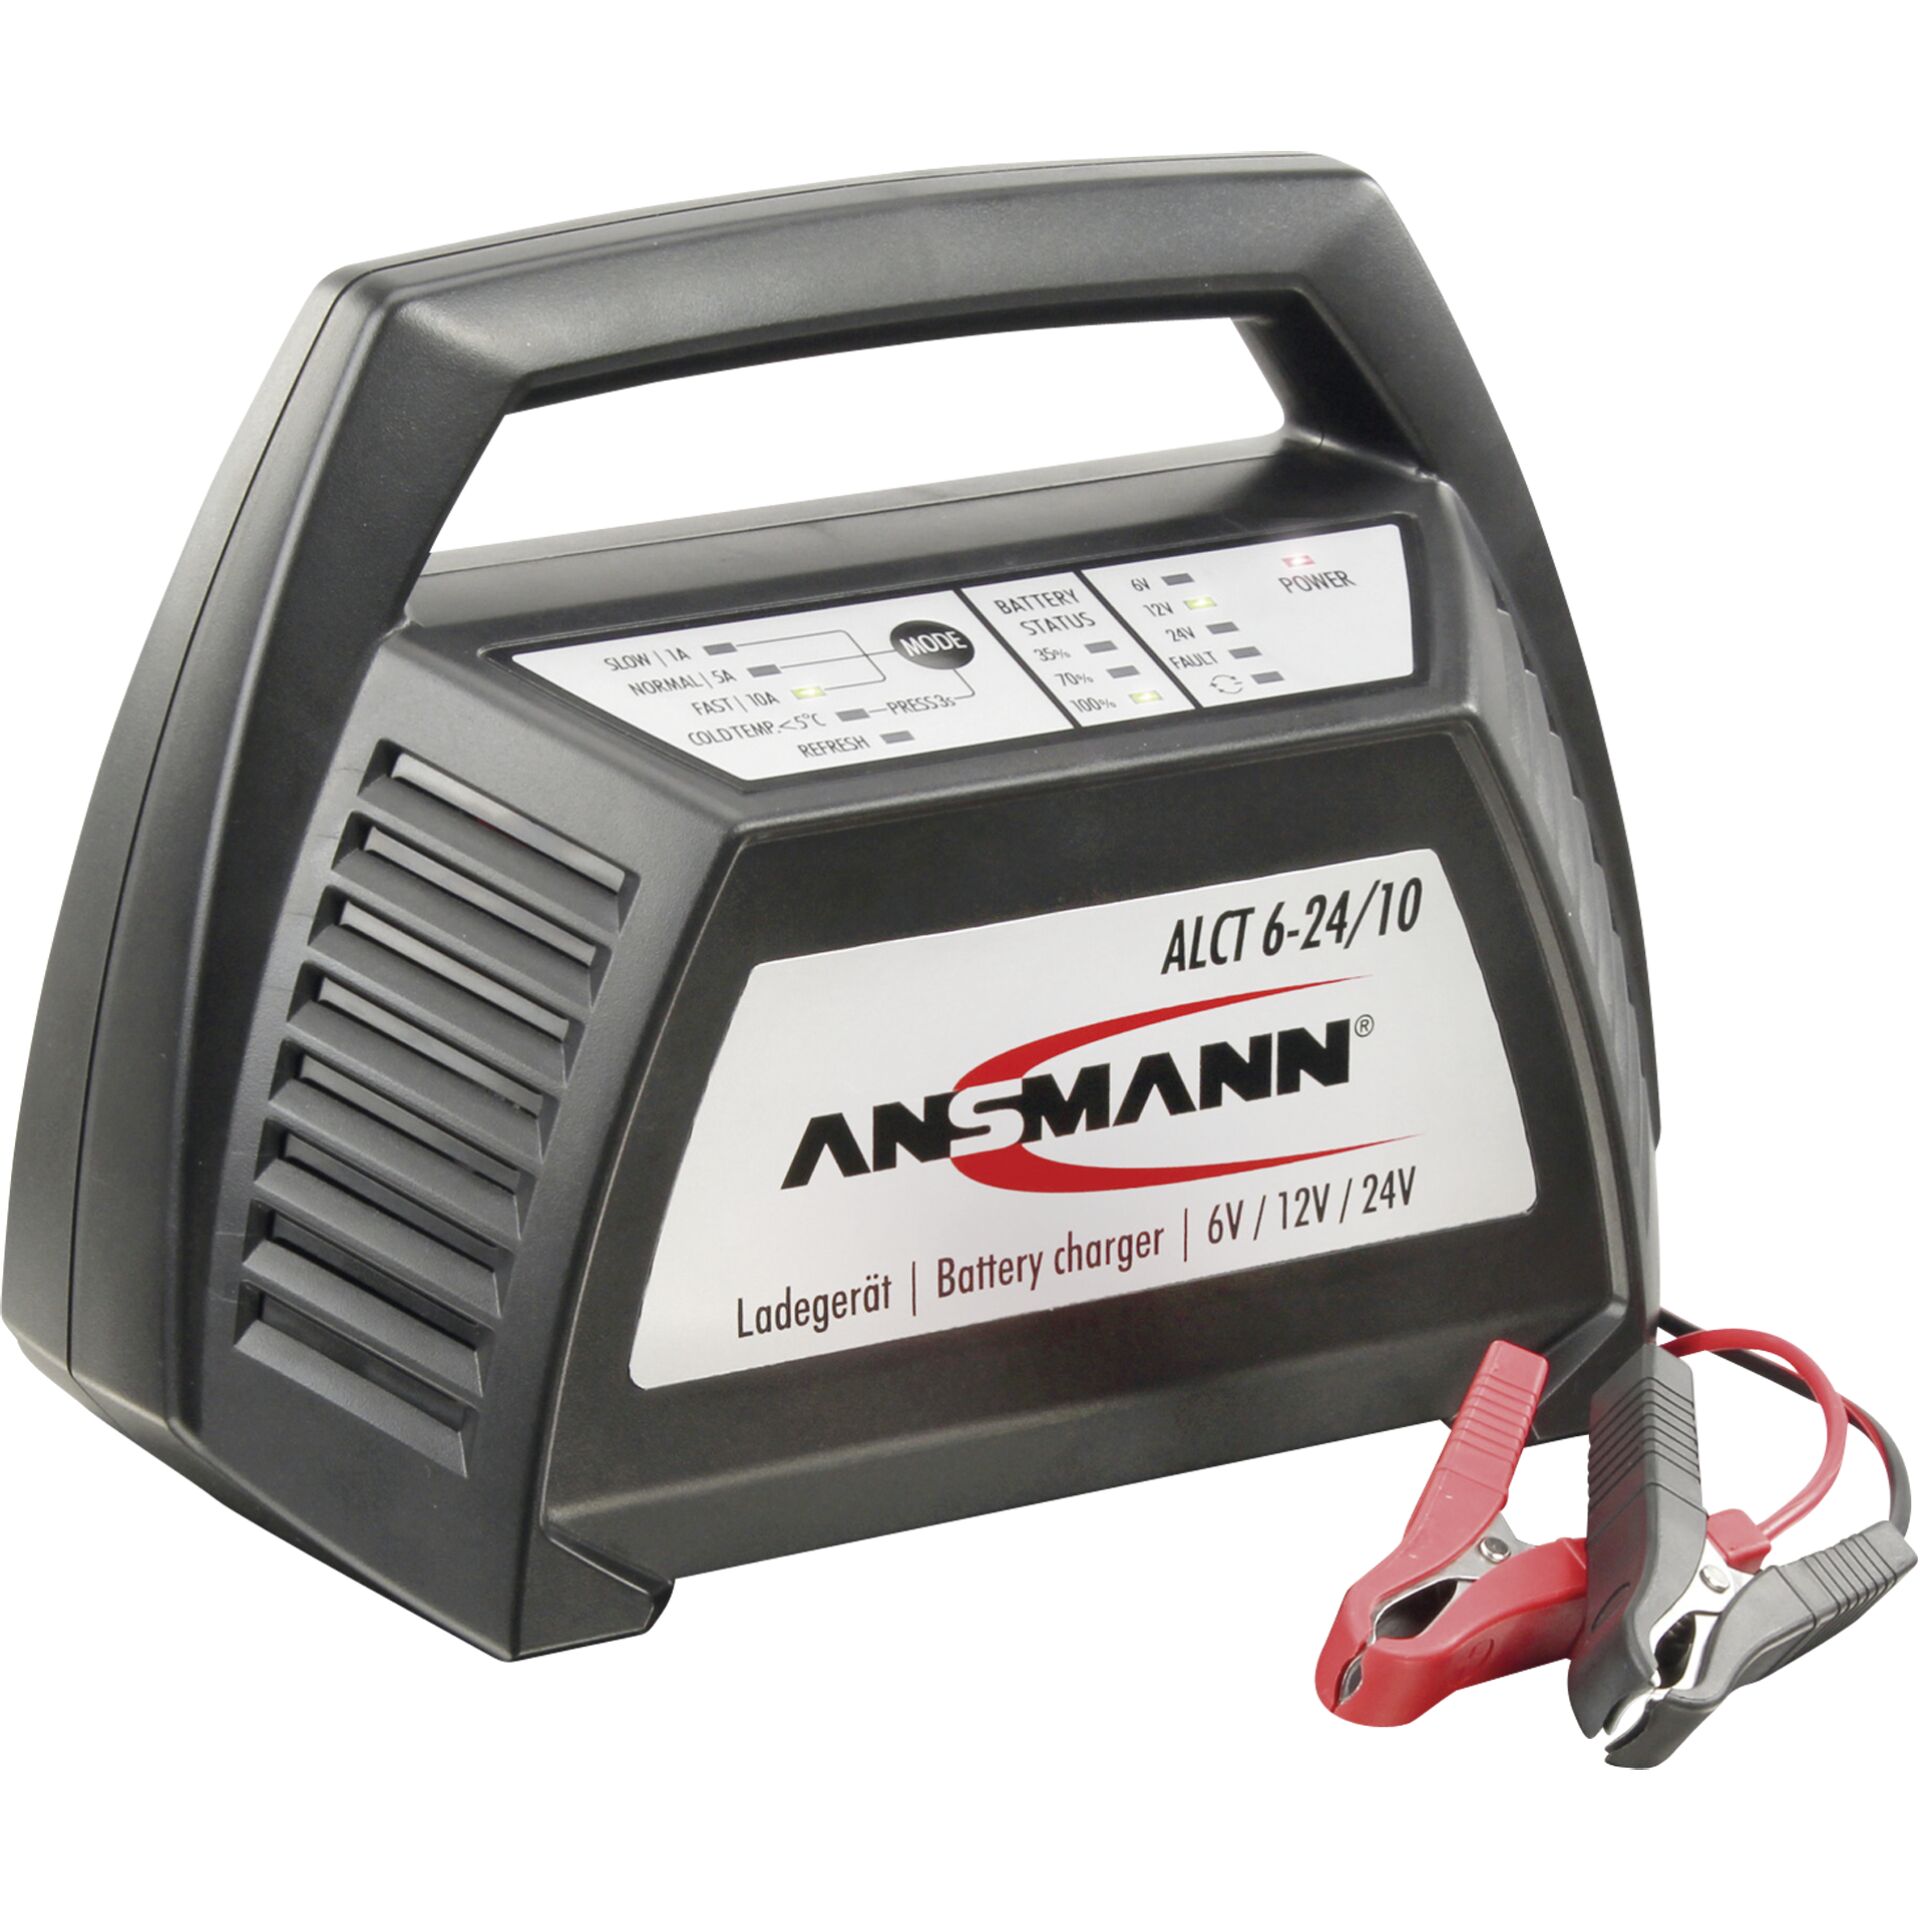 Ansmann ALCT6-24/10 Autobatterie caricabatterie